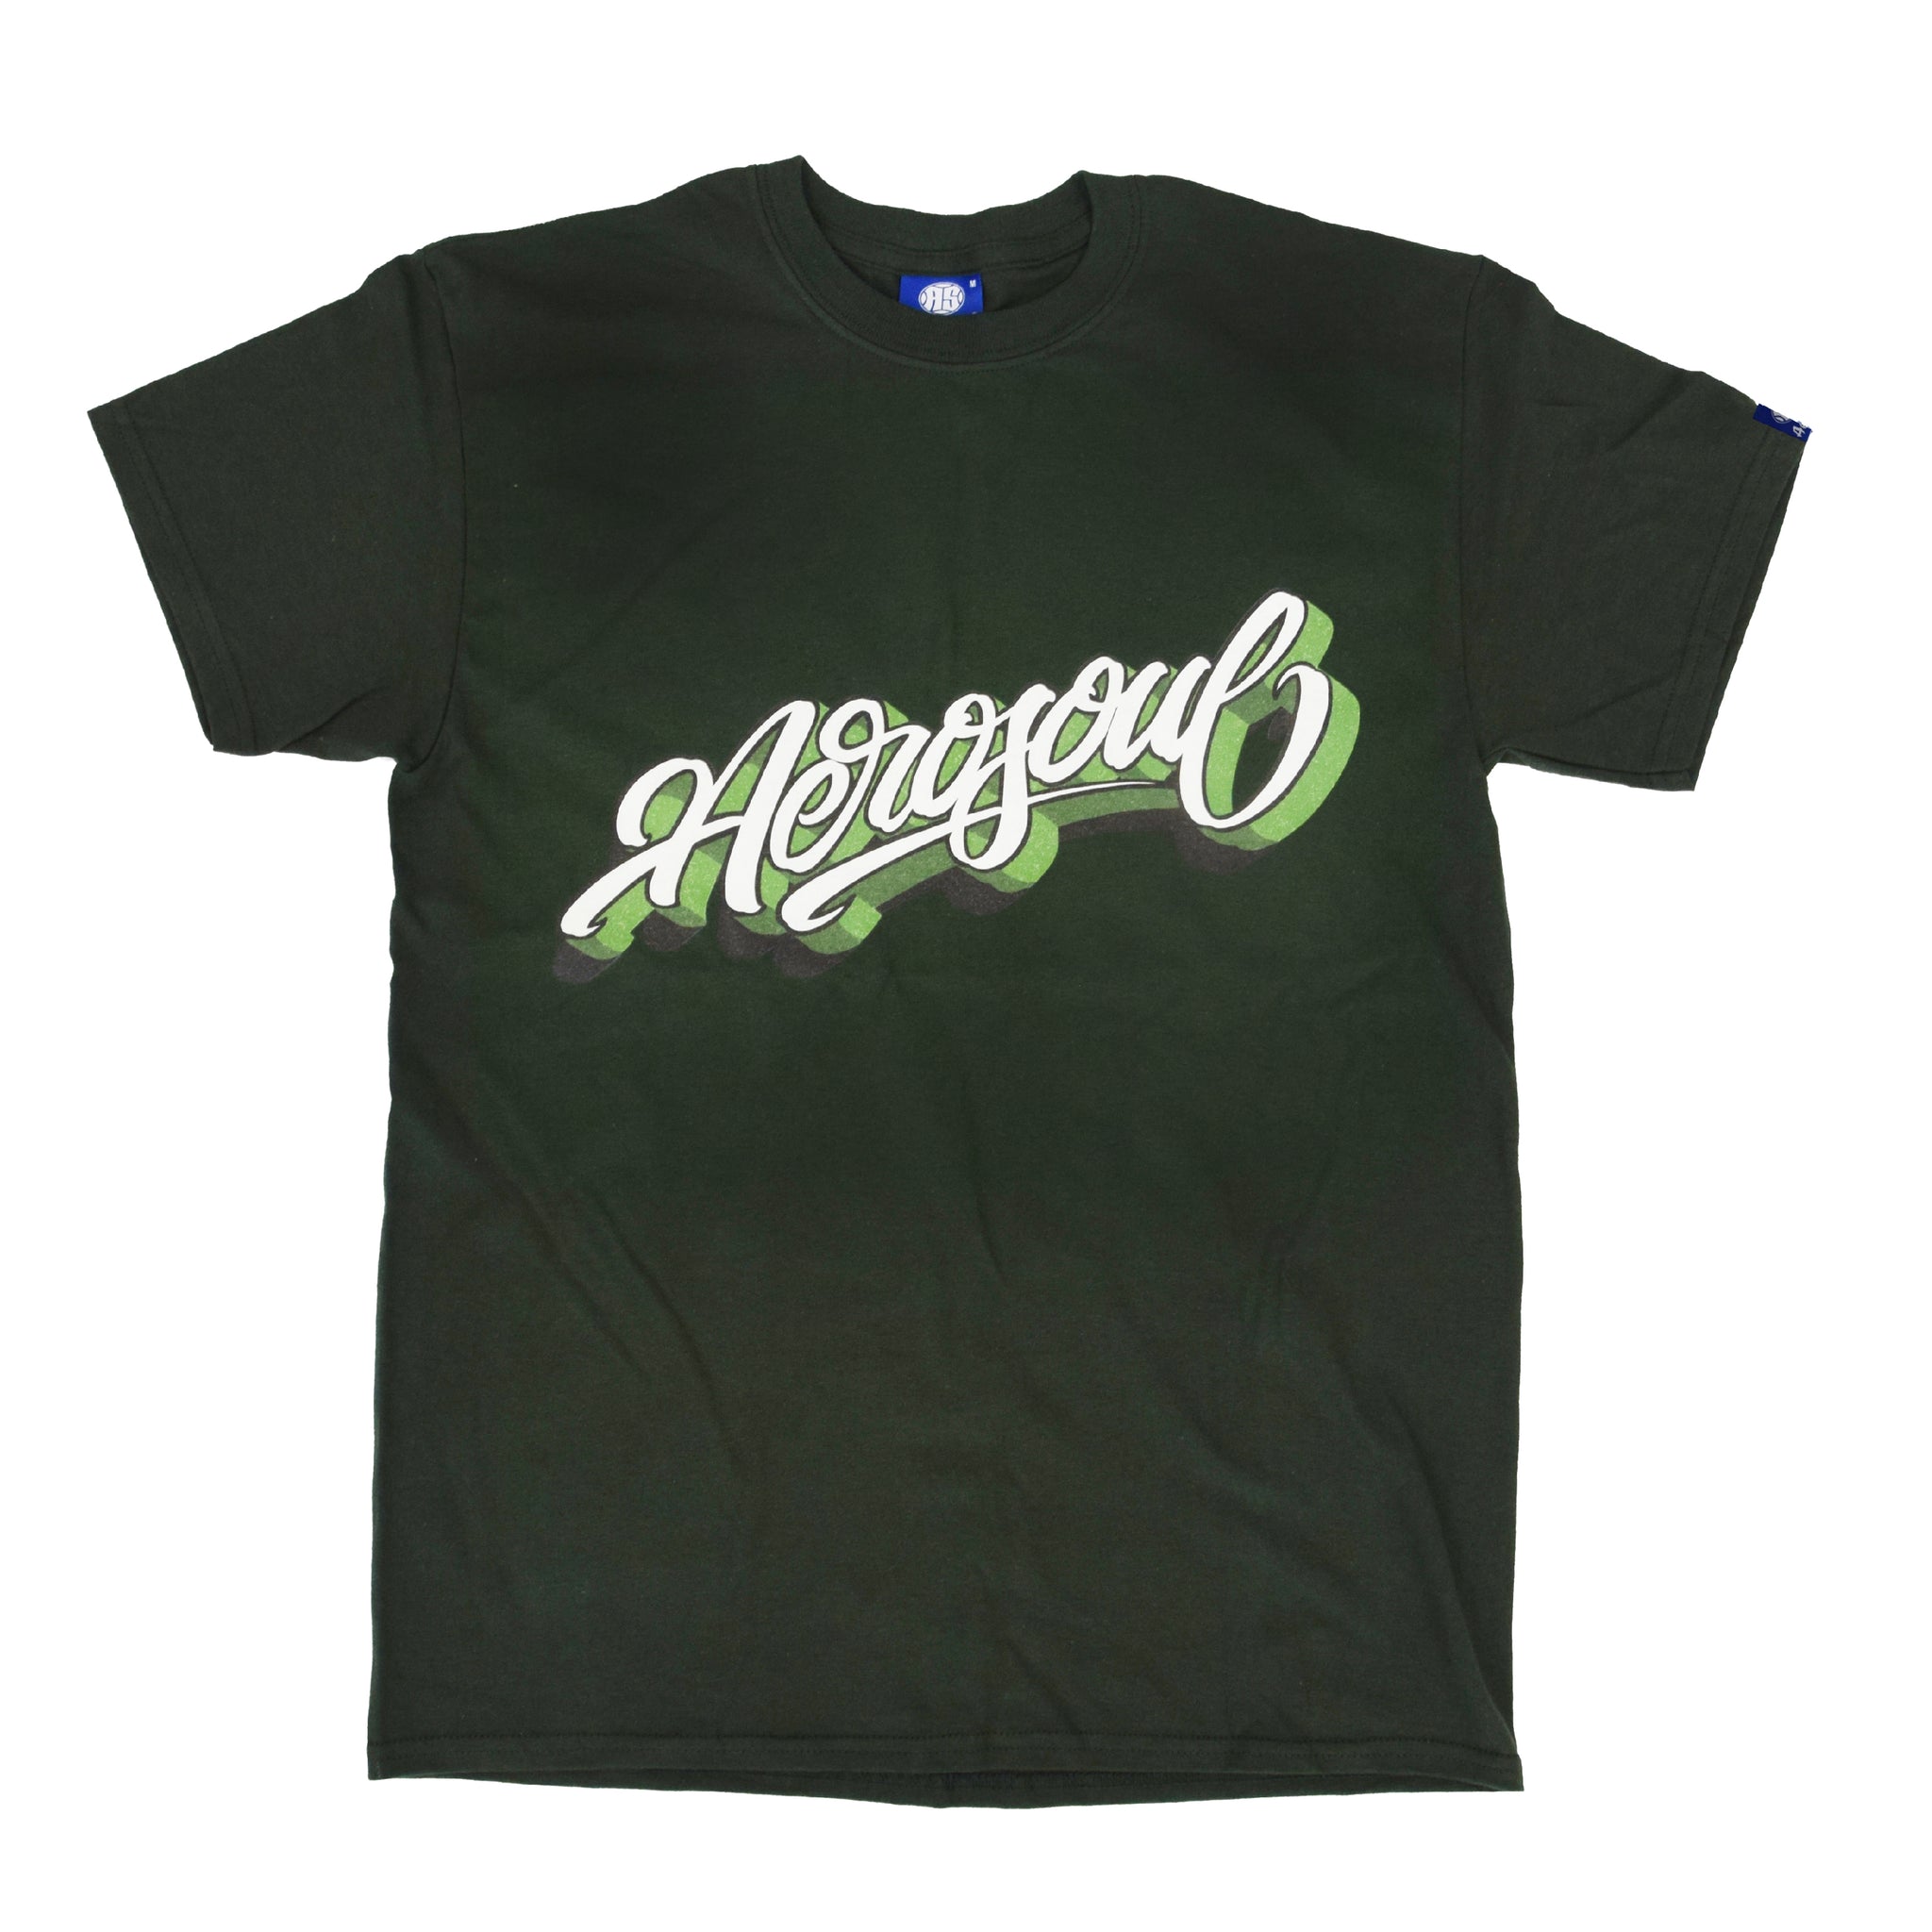 Aero-Script T-Shirt (Forest Green)